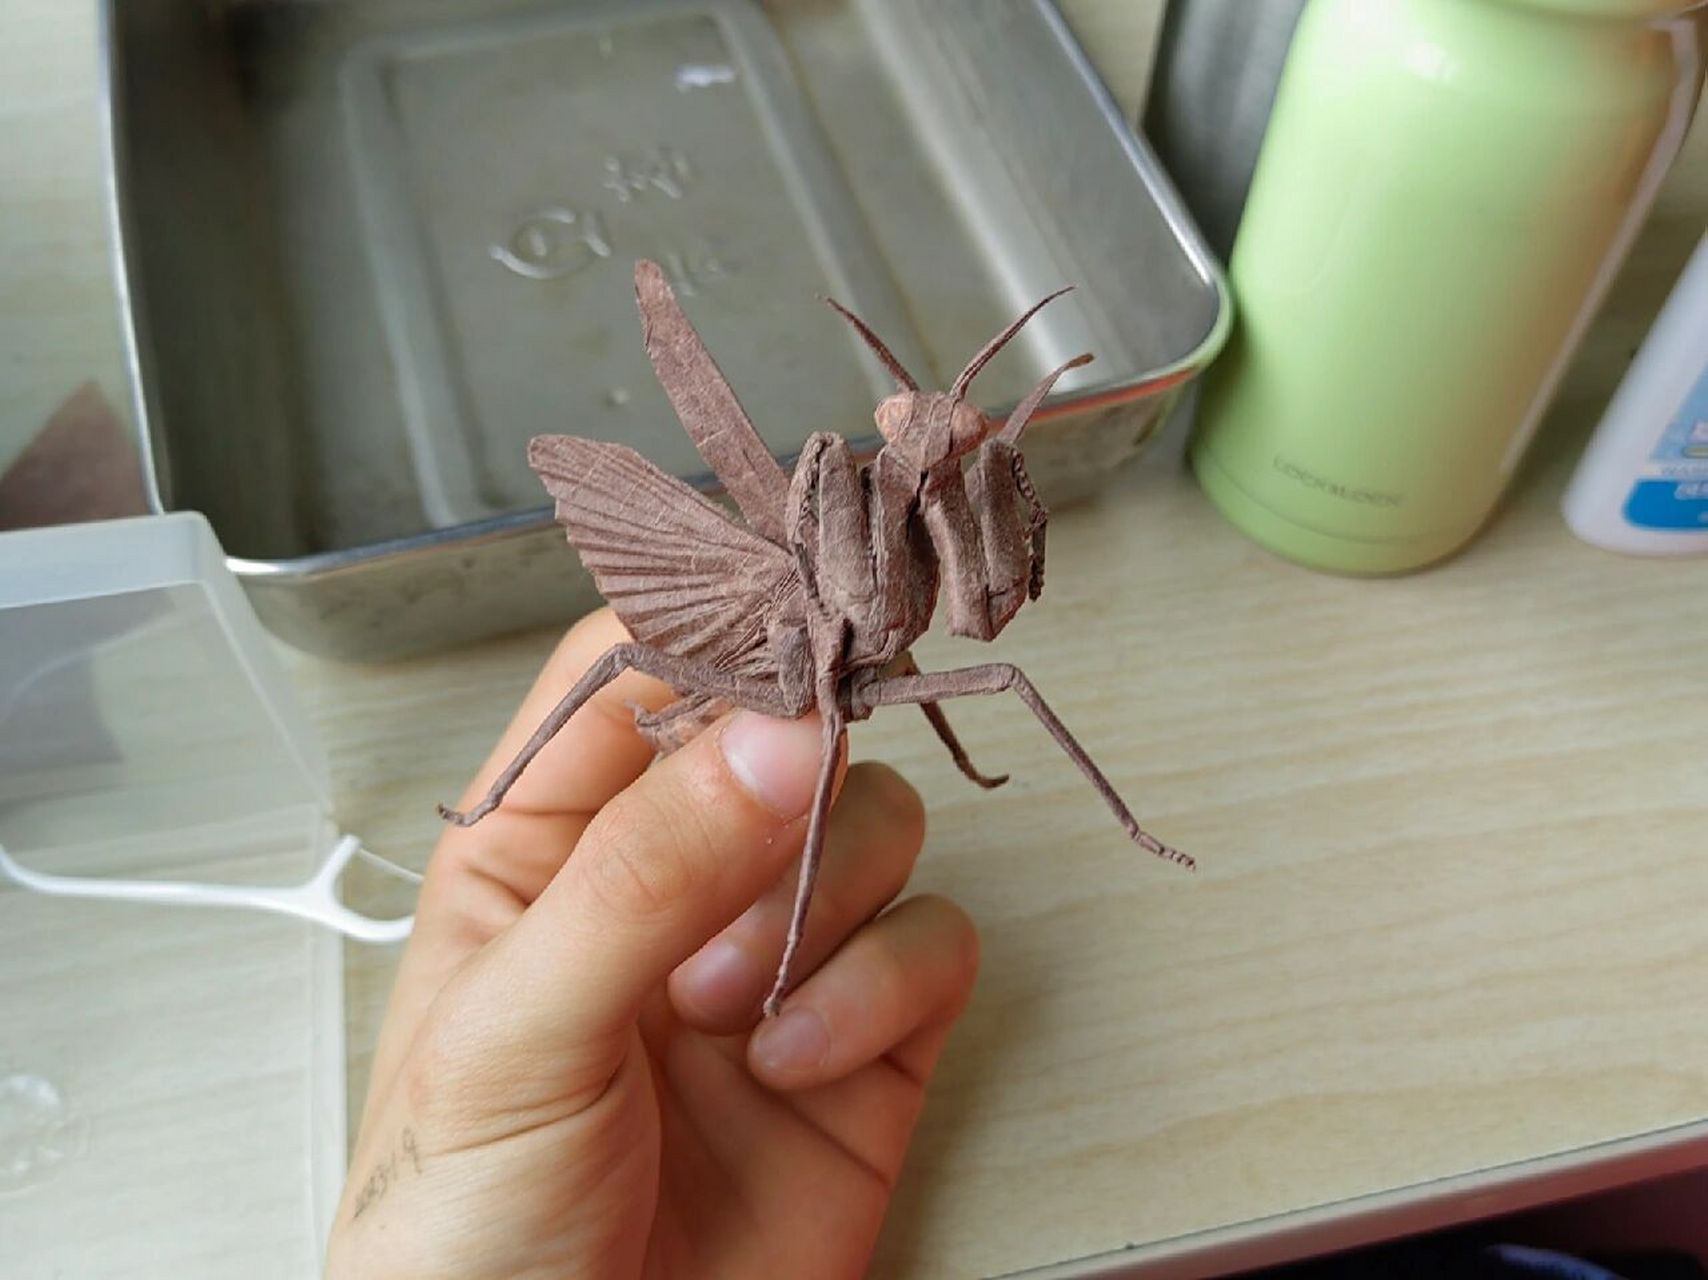 火车上折完的折纸螳螂 设计:今井幸太 折拍:我 用纸:35cm棕色拷贝纸